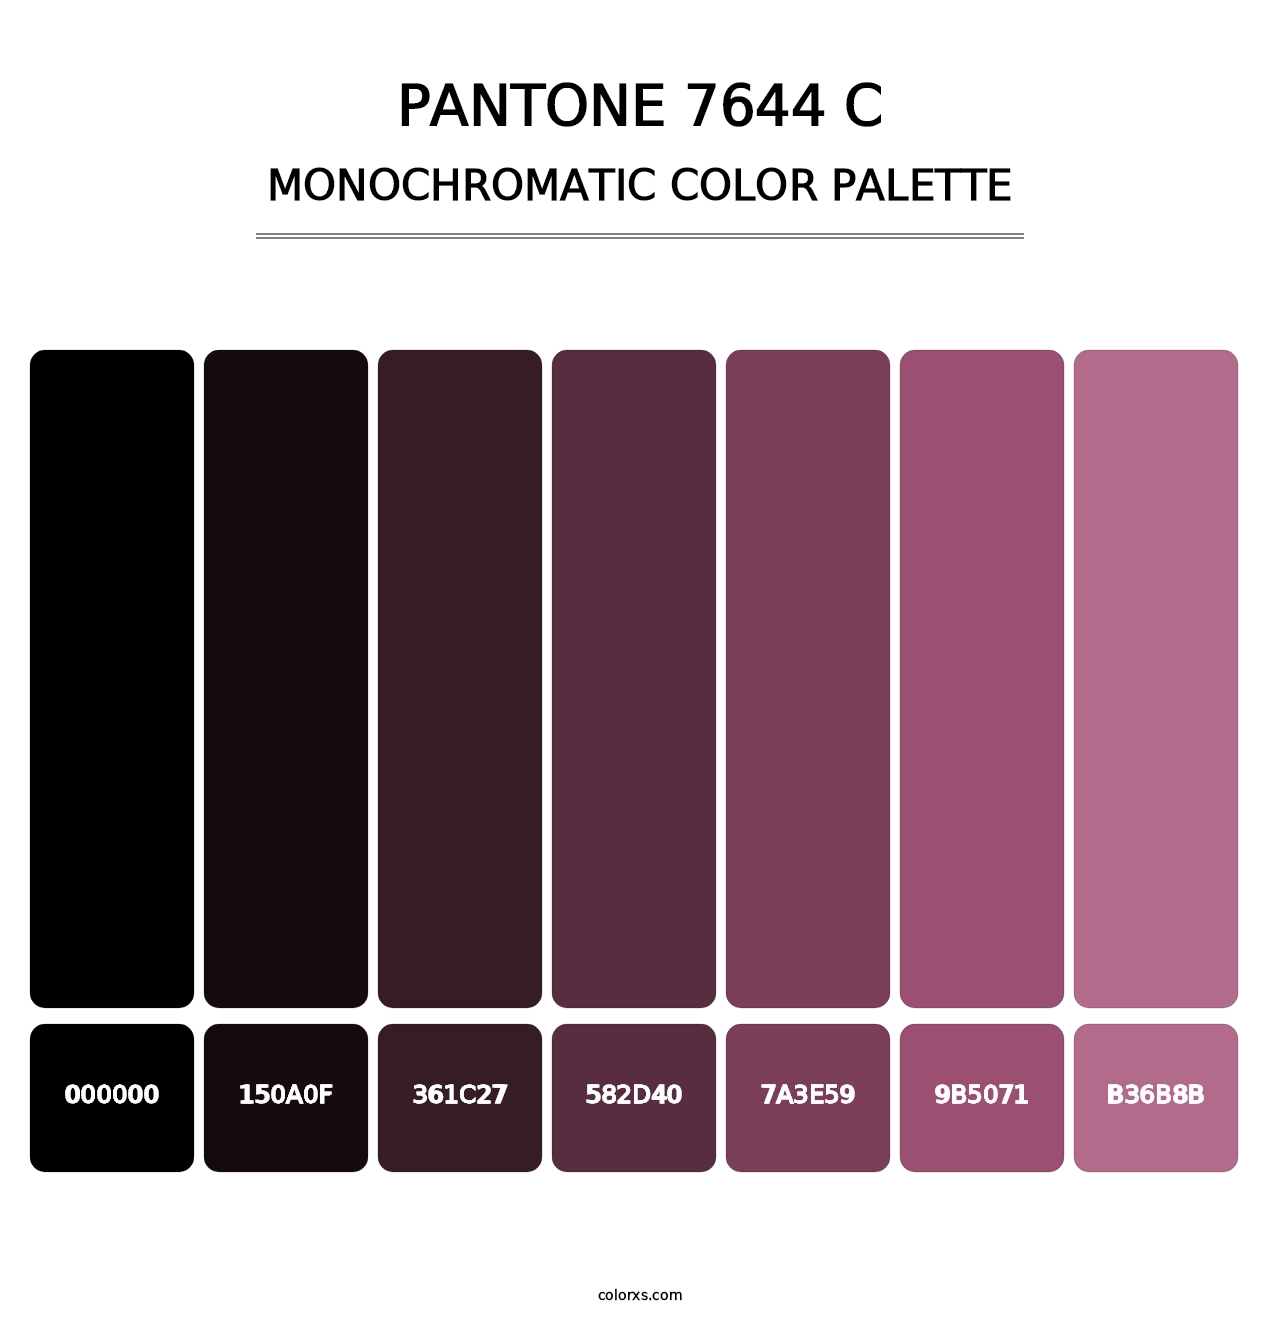 PANTONE 7644 C - Monochromatic Color Palette